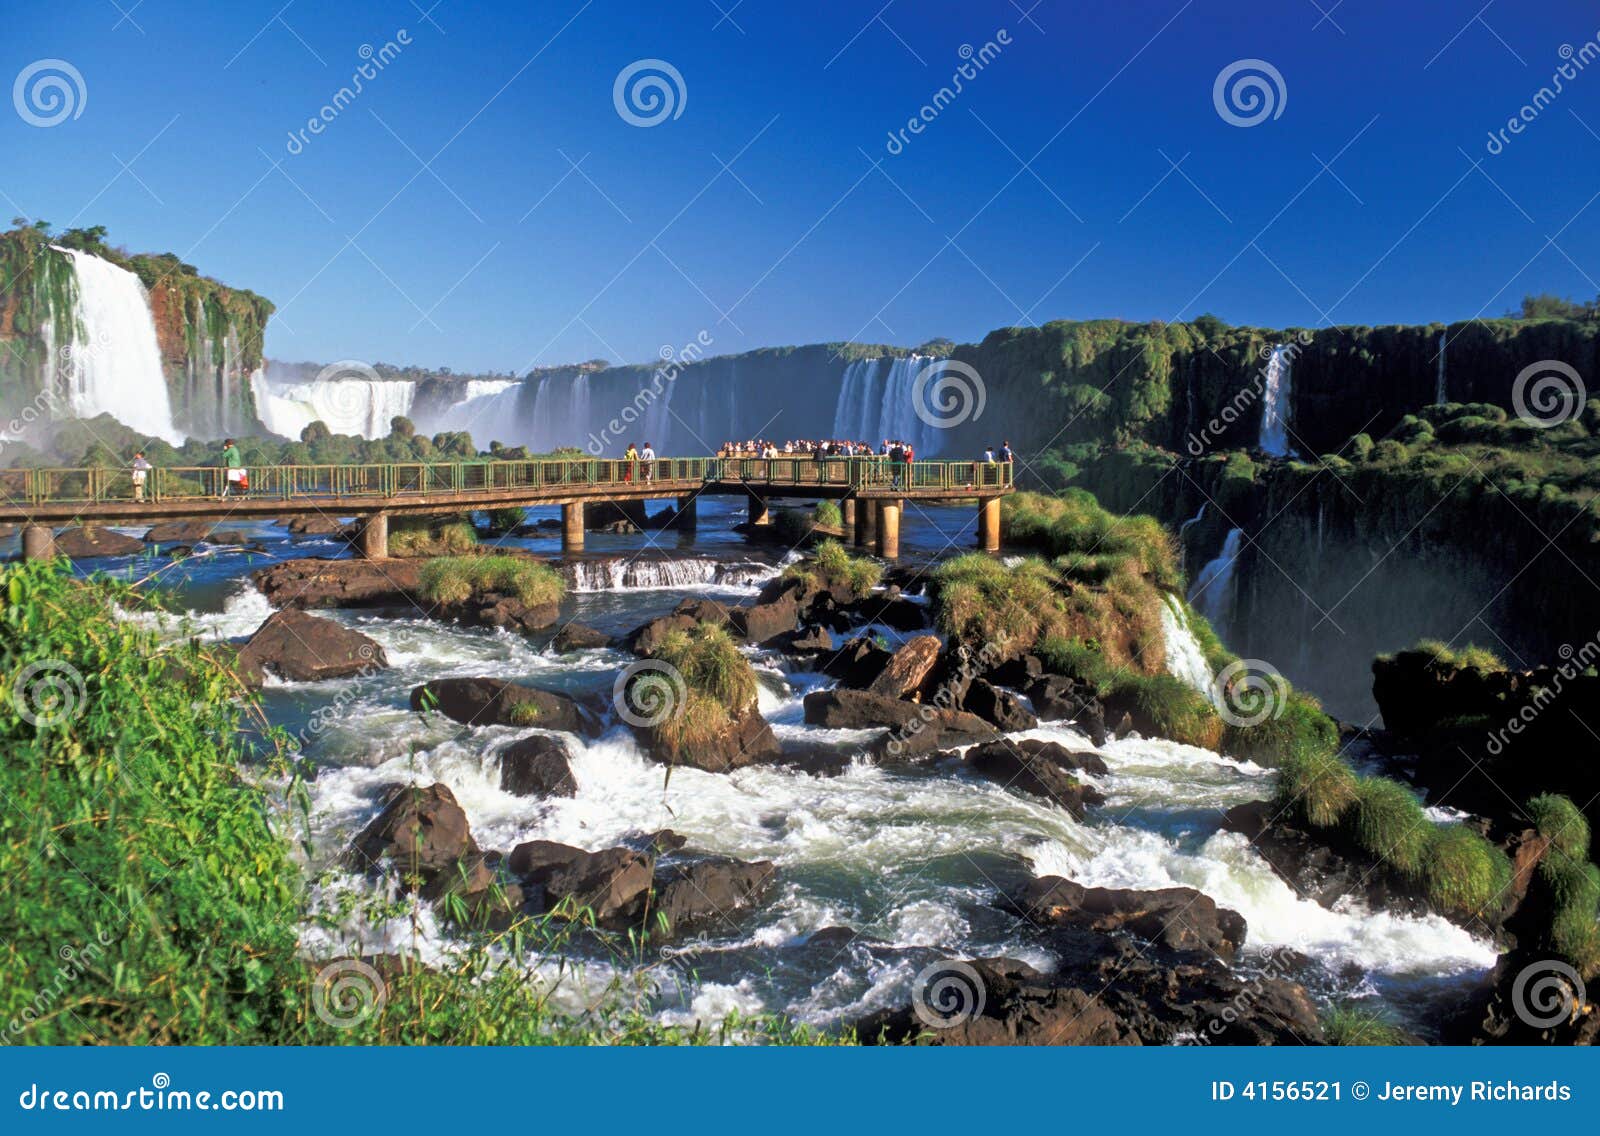 iguacu falls